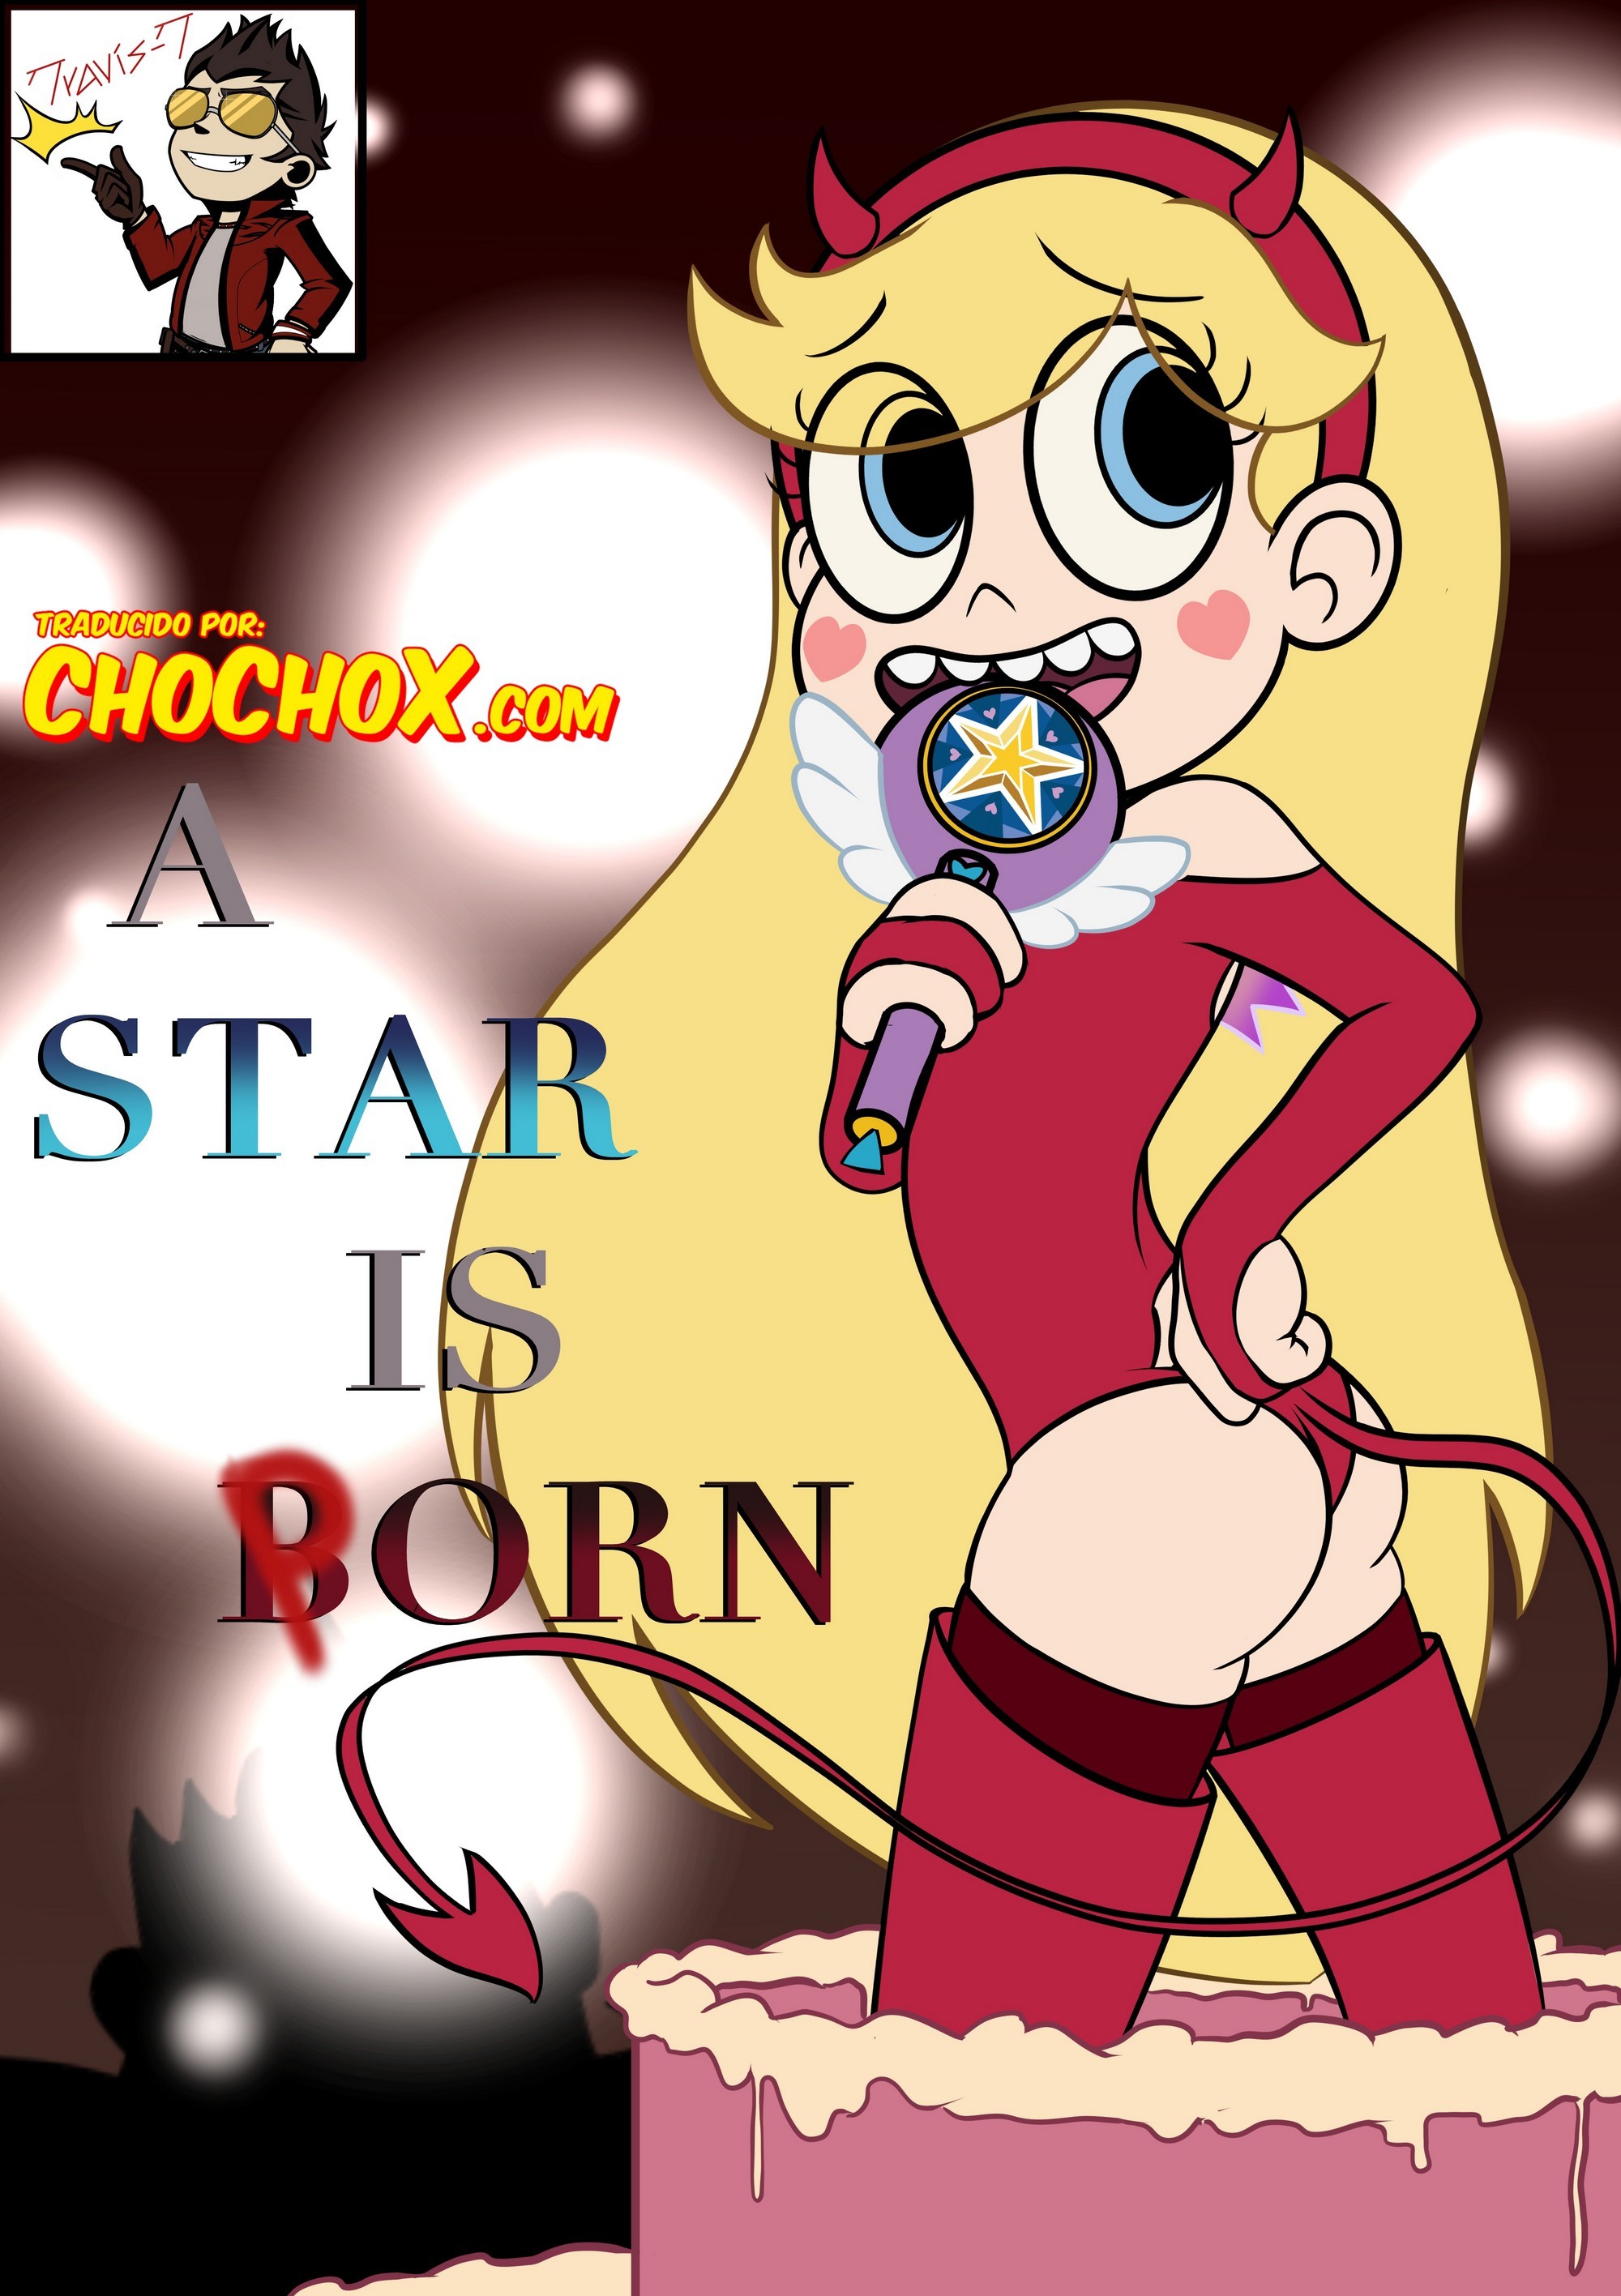 A Star is Born – TravisT - 0